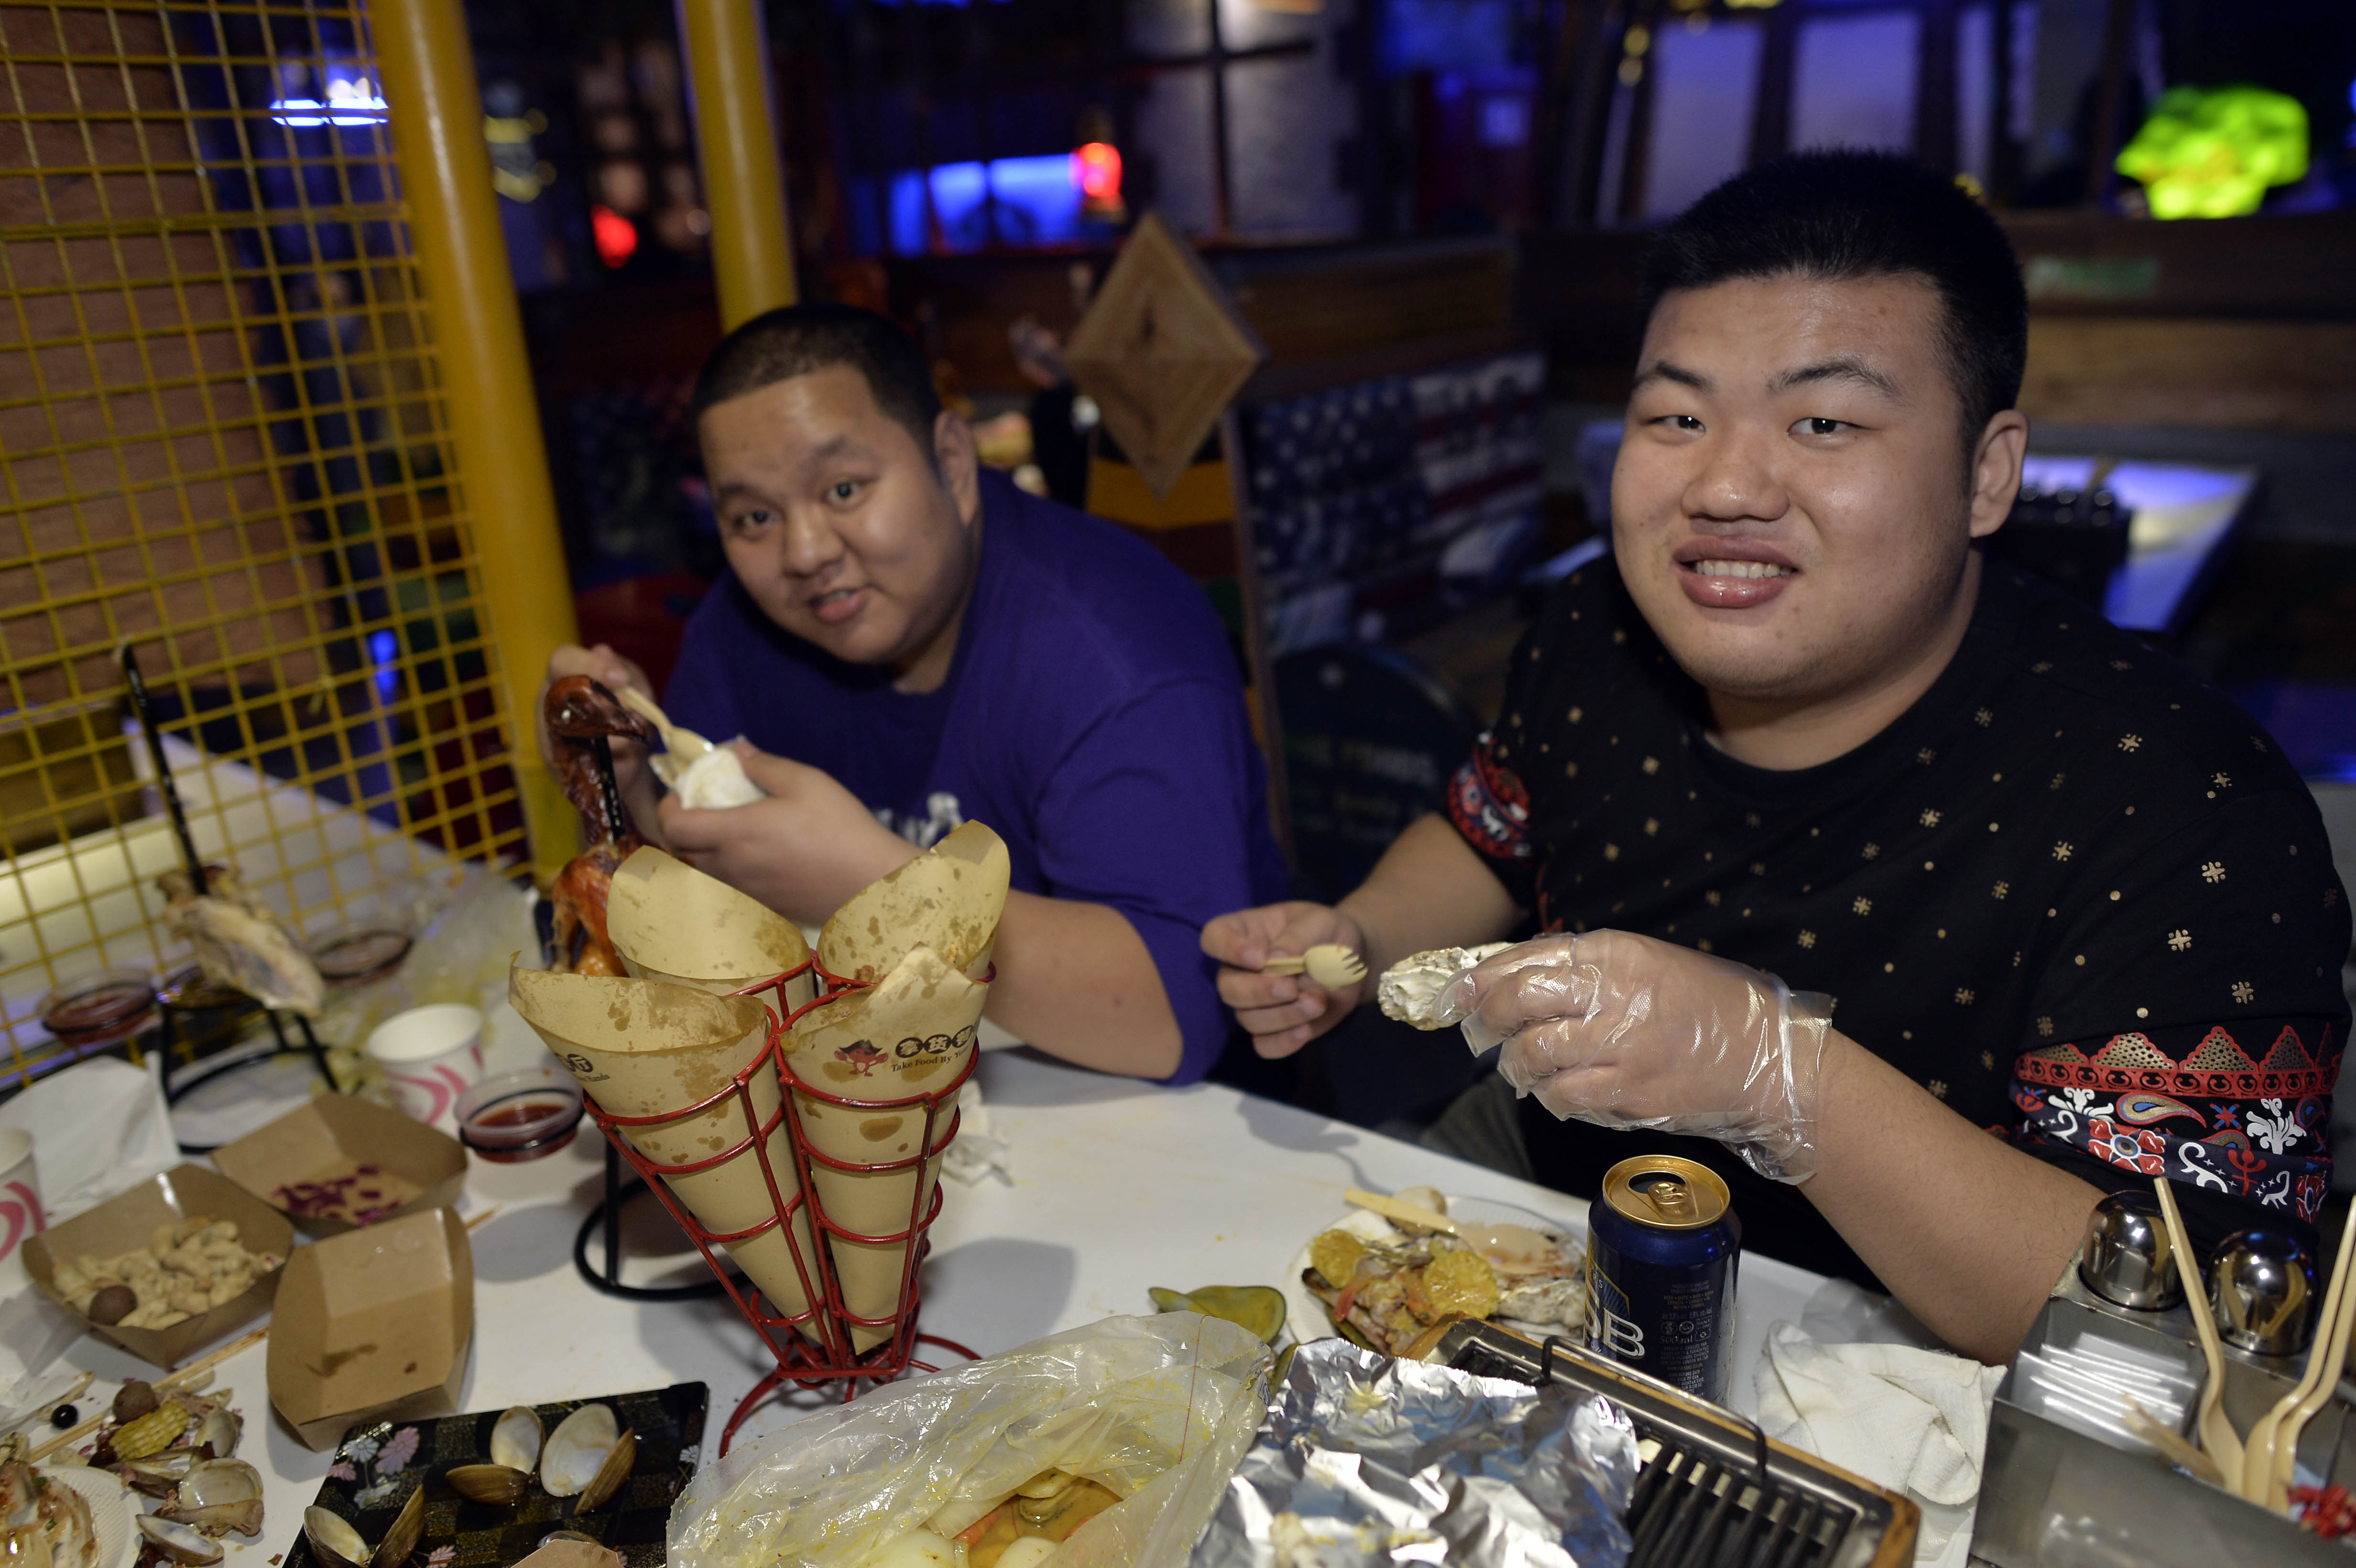 Eggyel kevesebb ételt szolgálnának fel az éttermekben Kínában, mint ahány vendég van